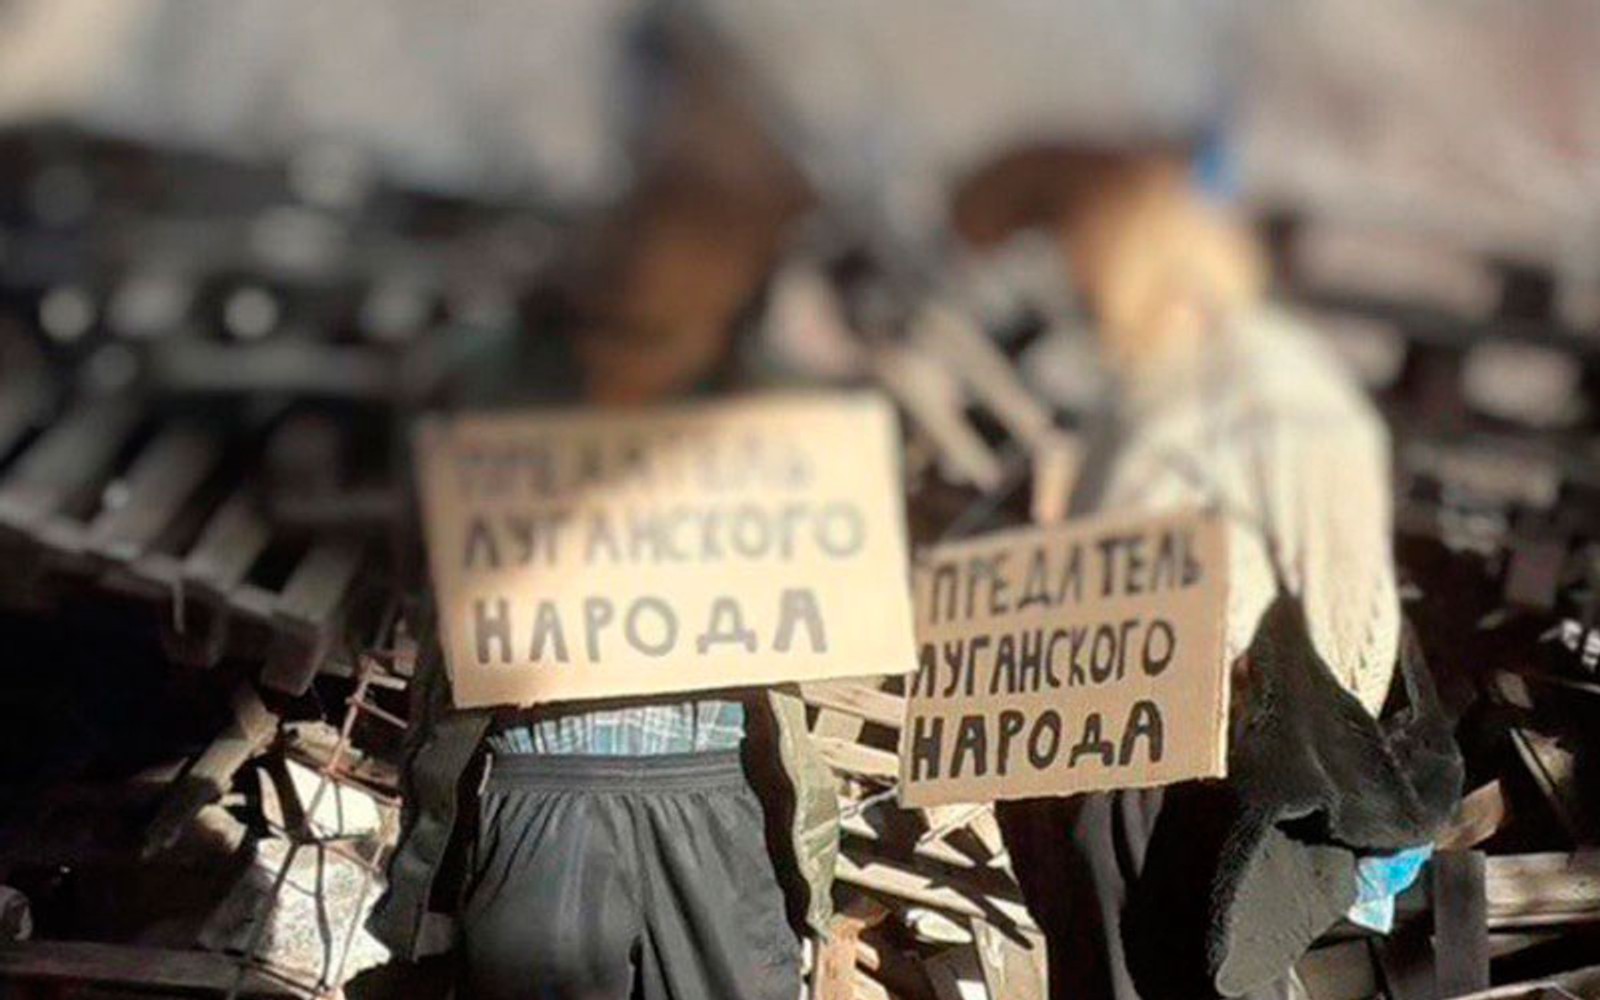 Z-каналы публикуют снимки повешенных мужчин, утверждая, что их убили в Луганской области «из-за сотрудничества с ВСУ»